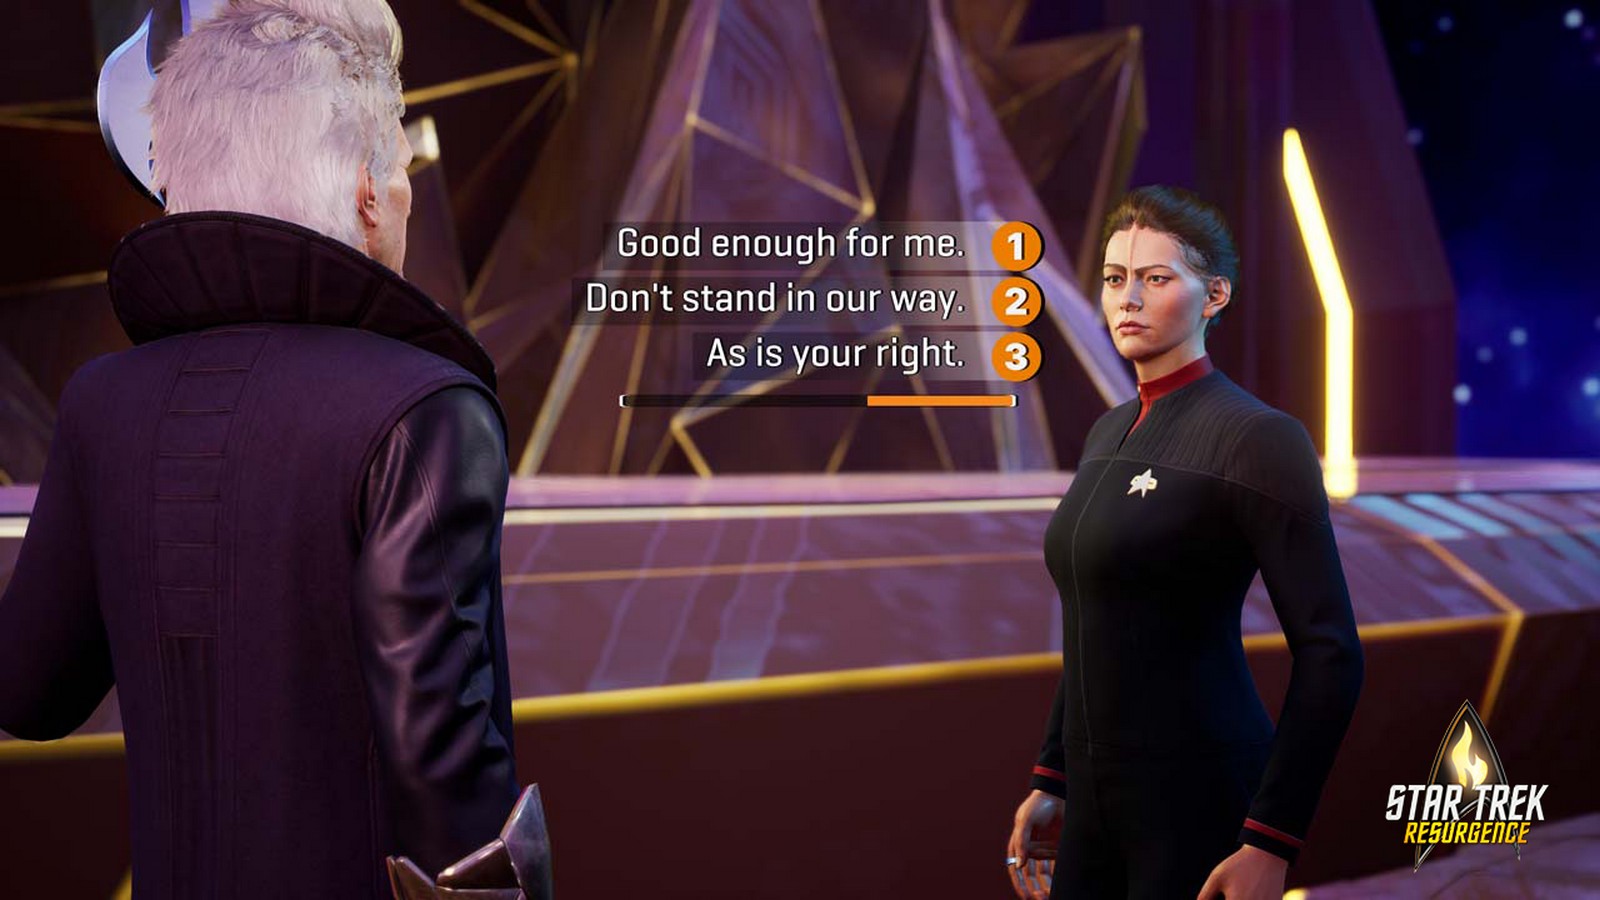 Star Trek: Resurgence, PlayStation 5 